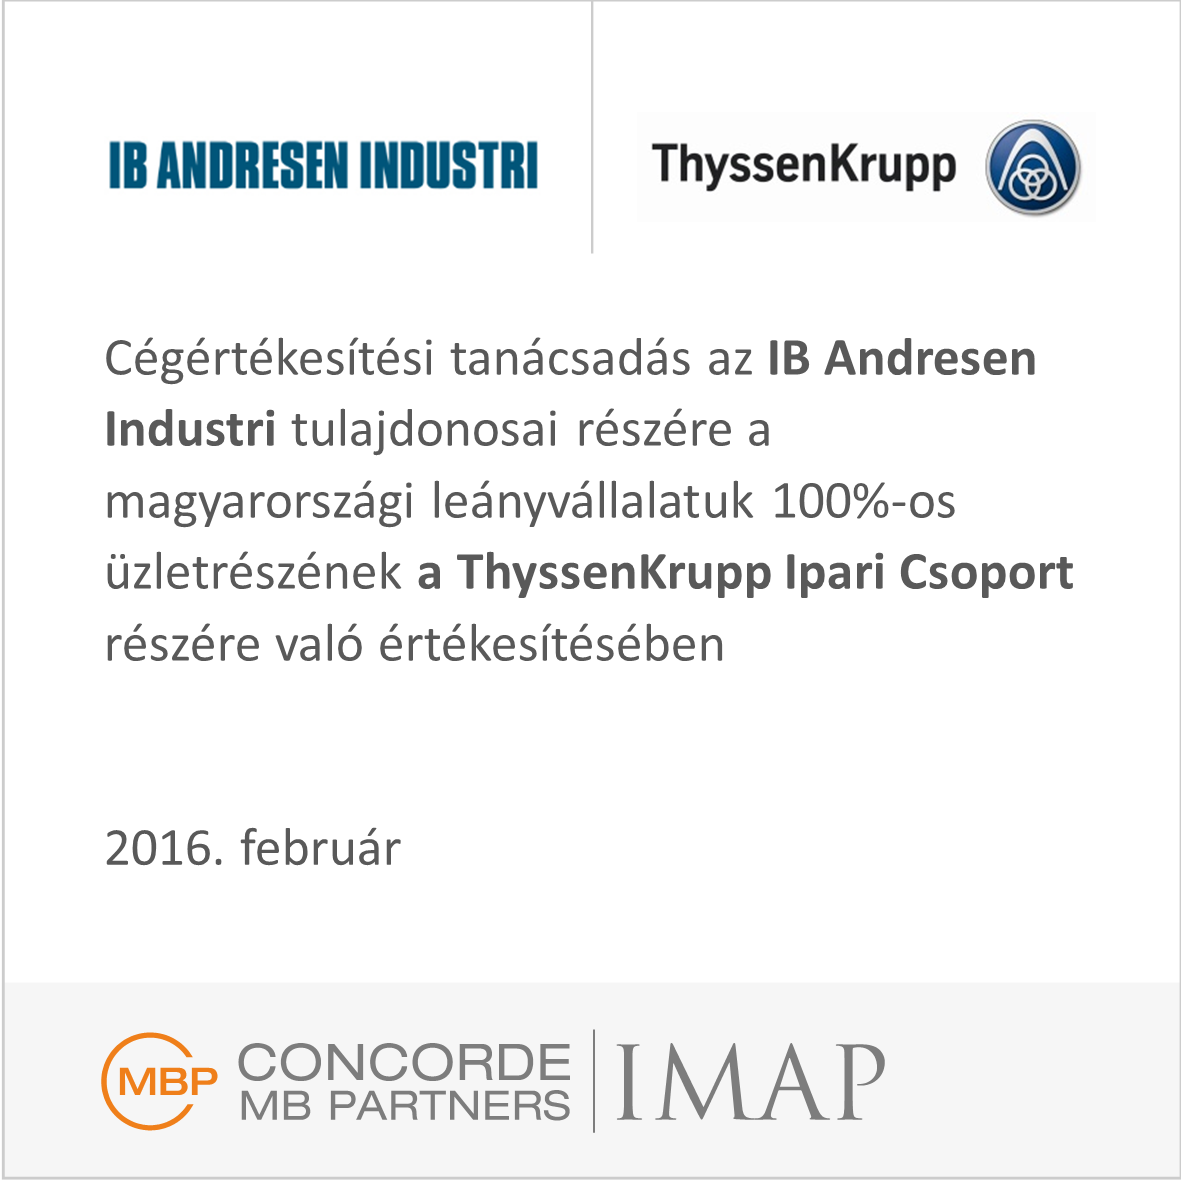 IB Andresen Industri magyar leánycégének 100%-os értékesítése